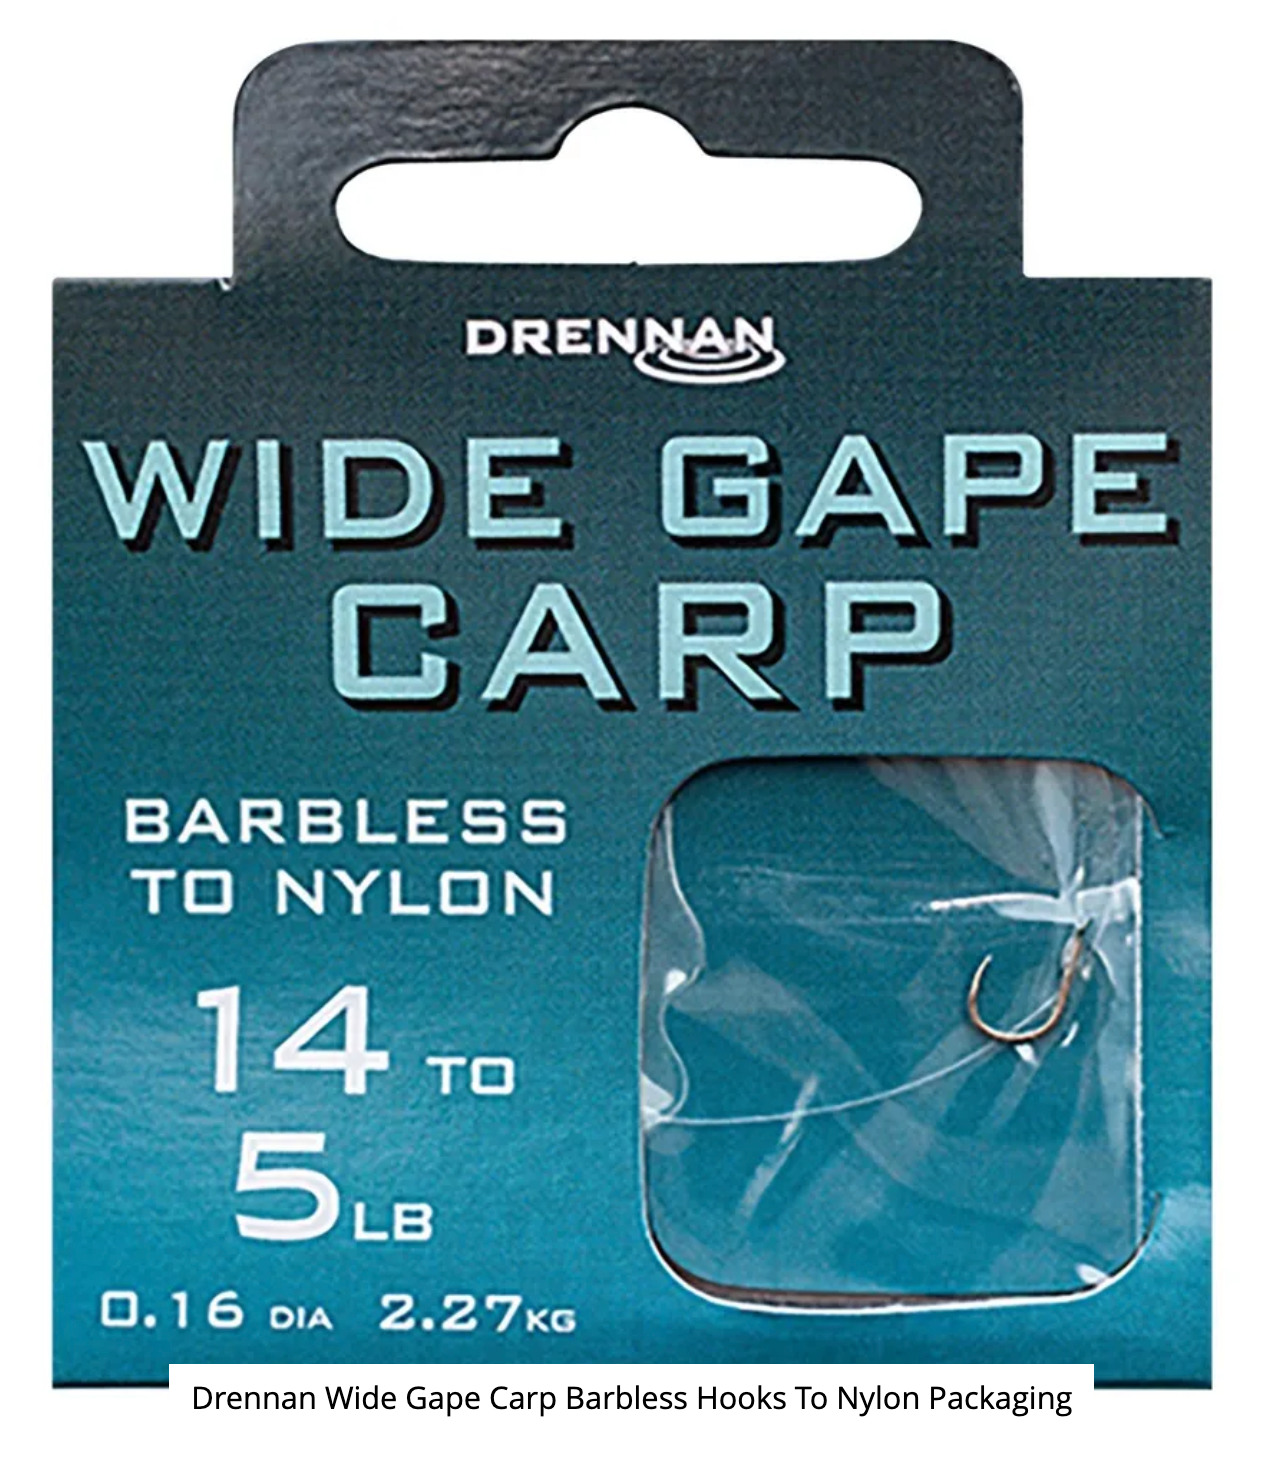 Wide Gape Carp